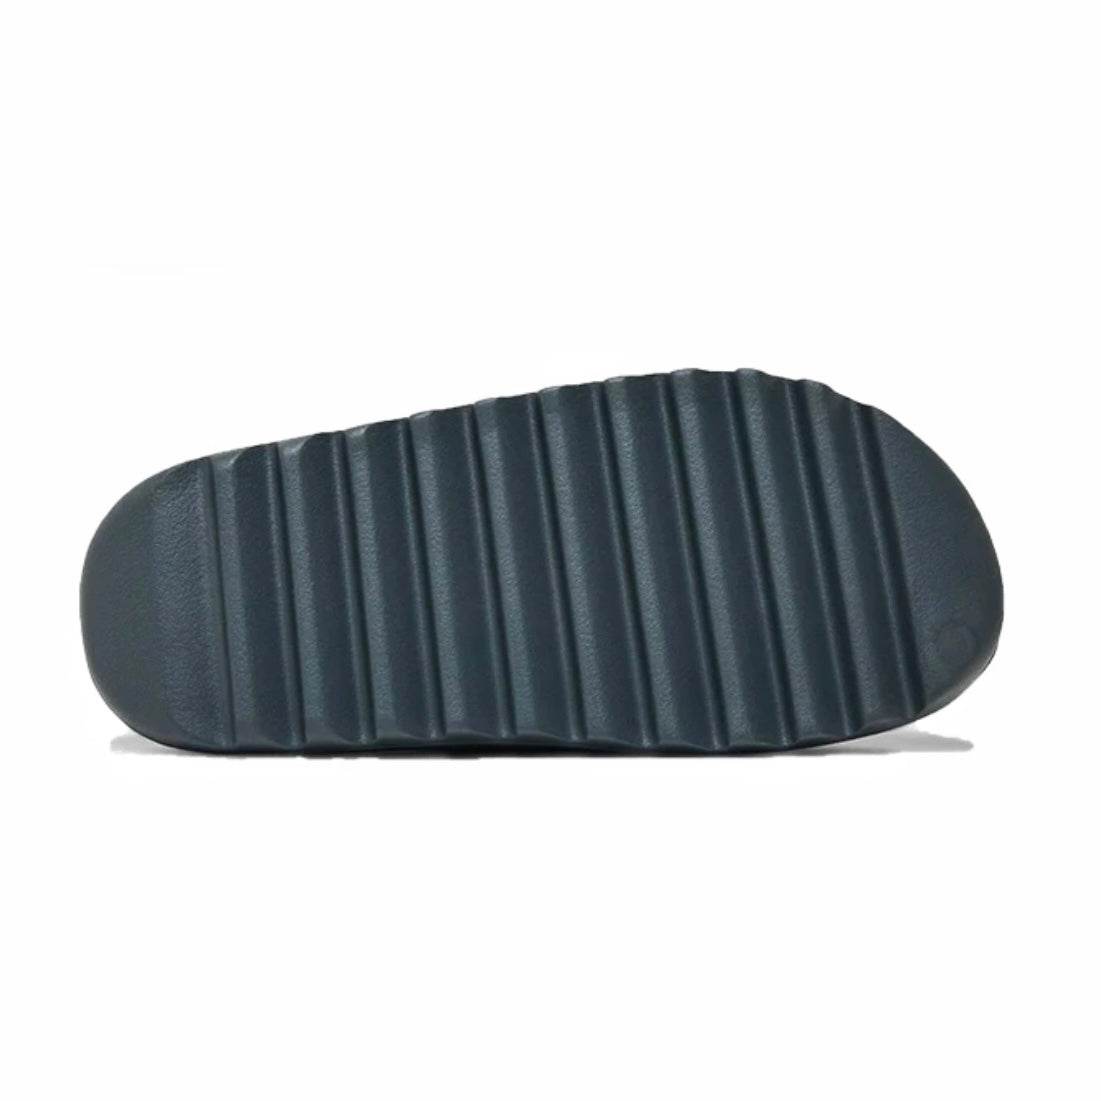 Adidas Yeezy Slide Slate Grey suola seghettata. Il colore è uguale al resto della ciabatta, grigio/nero